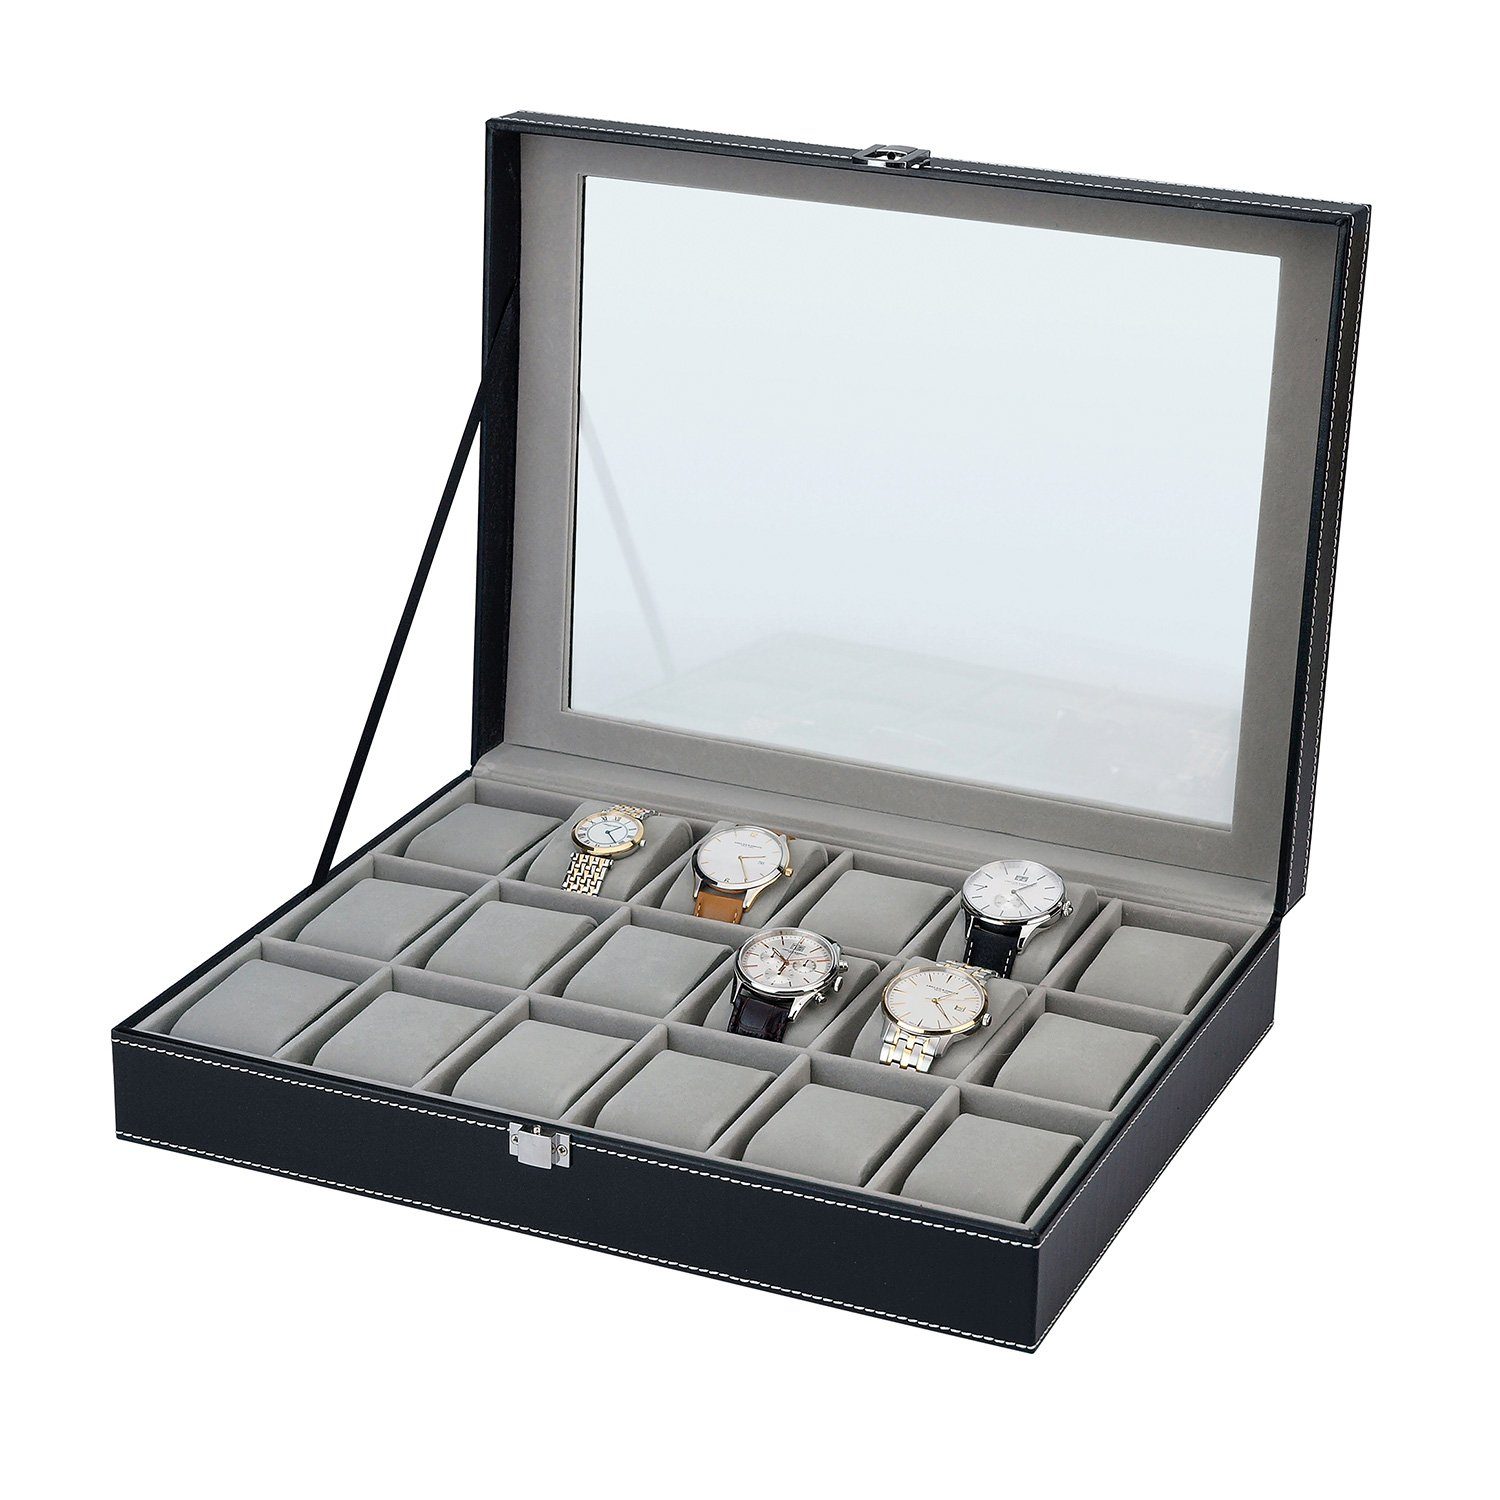 Selva Technik Uhrenbox Uhrensammelbox für 18 Uhren – Hervorragende Verarbeitung – LEDE